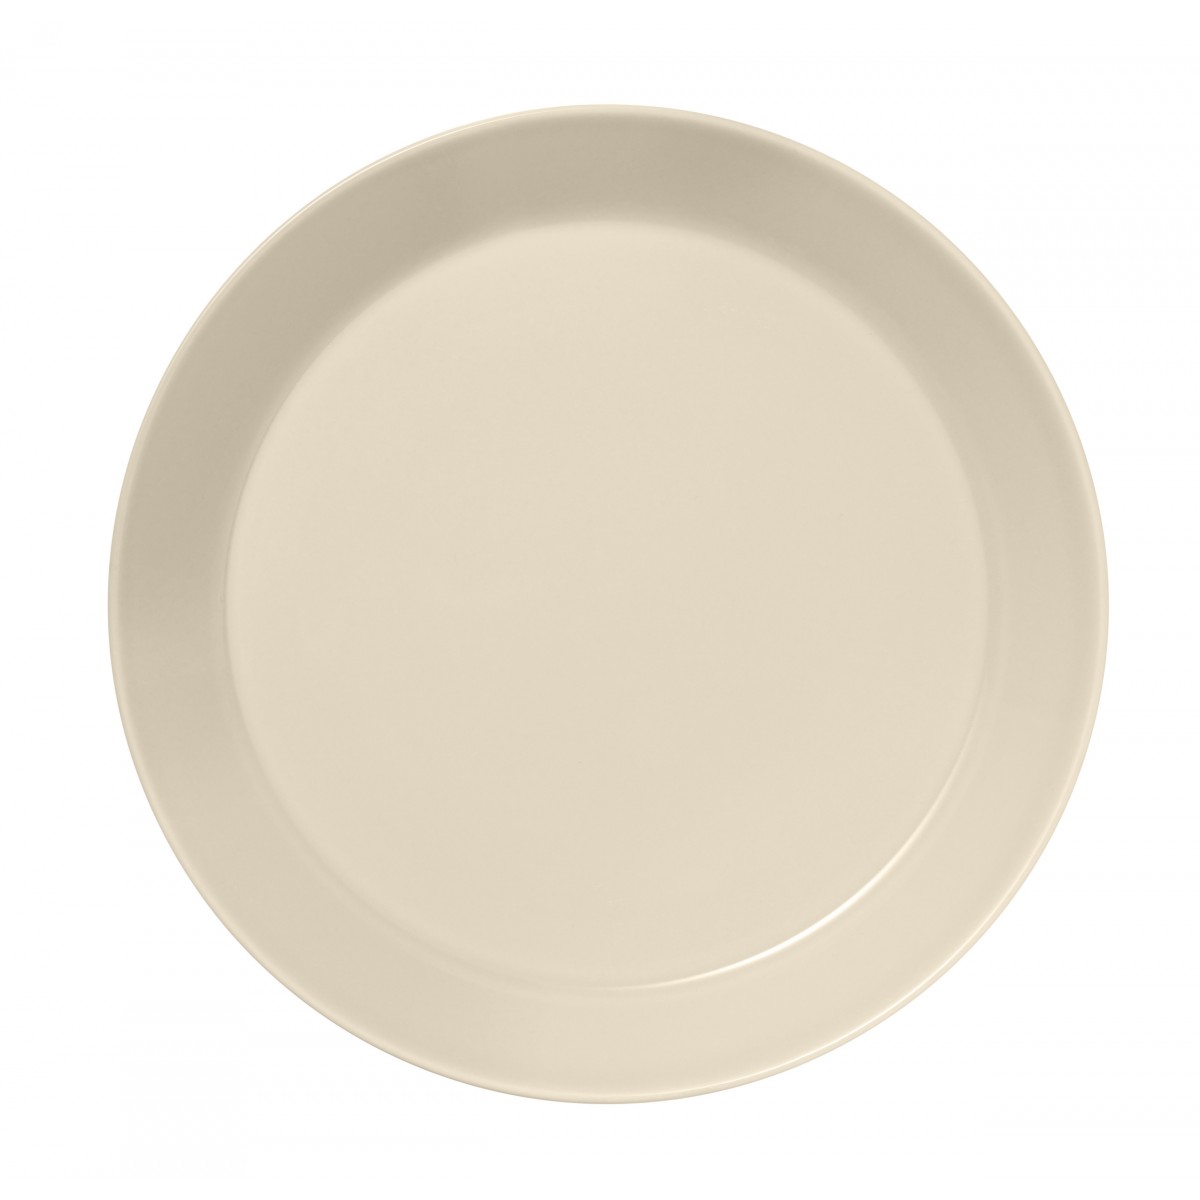 Ø26cm - Teema plate - linen - 1061228